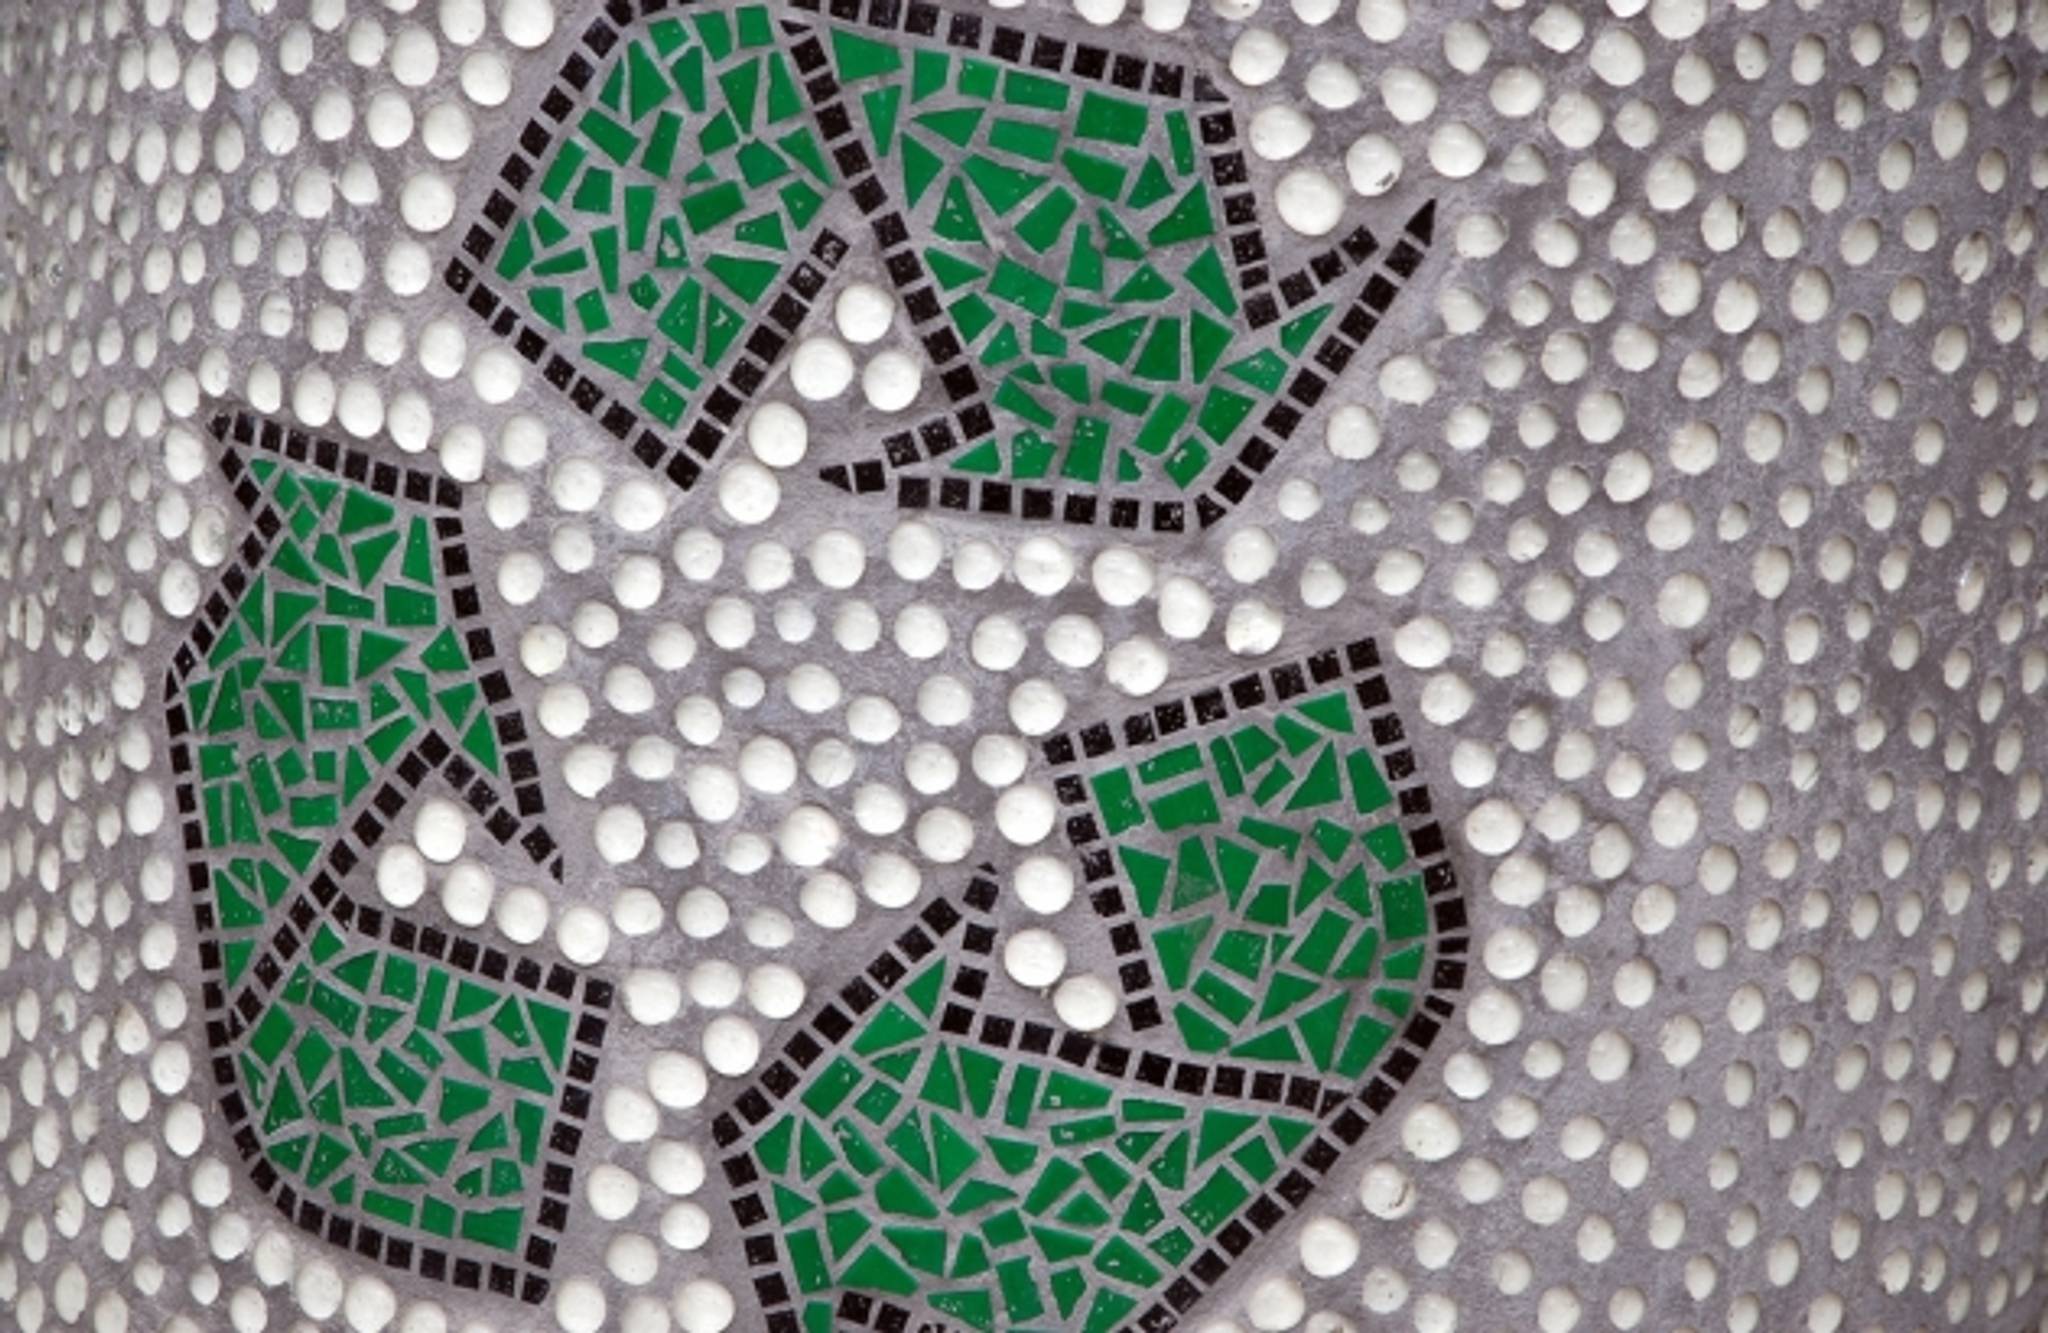 Recyclebank: incentivising eco behaviour